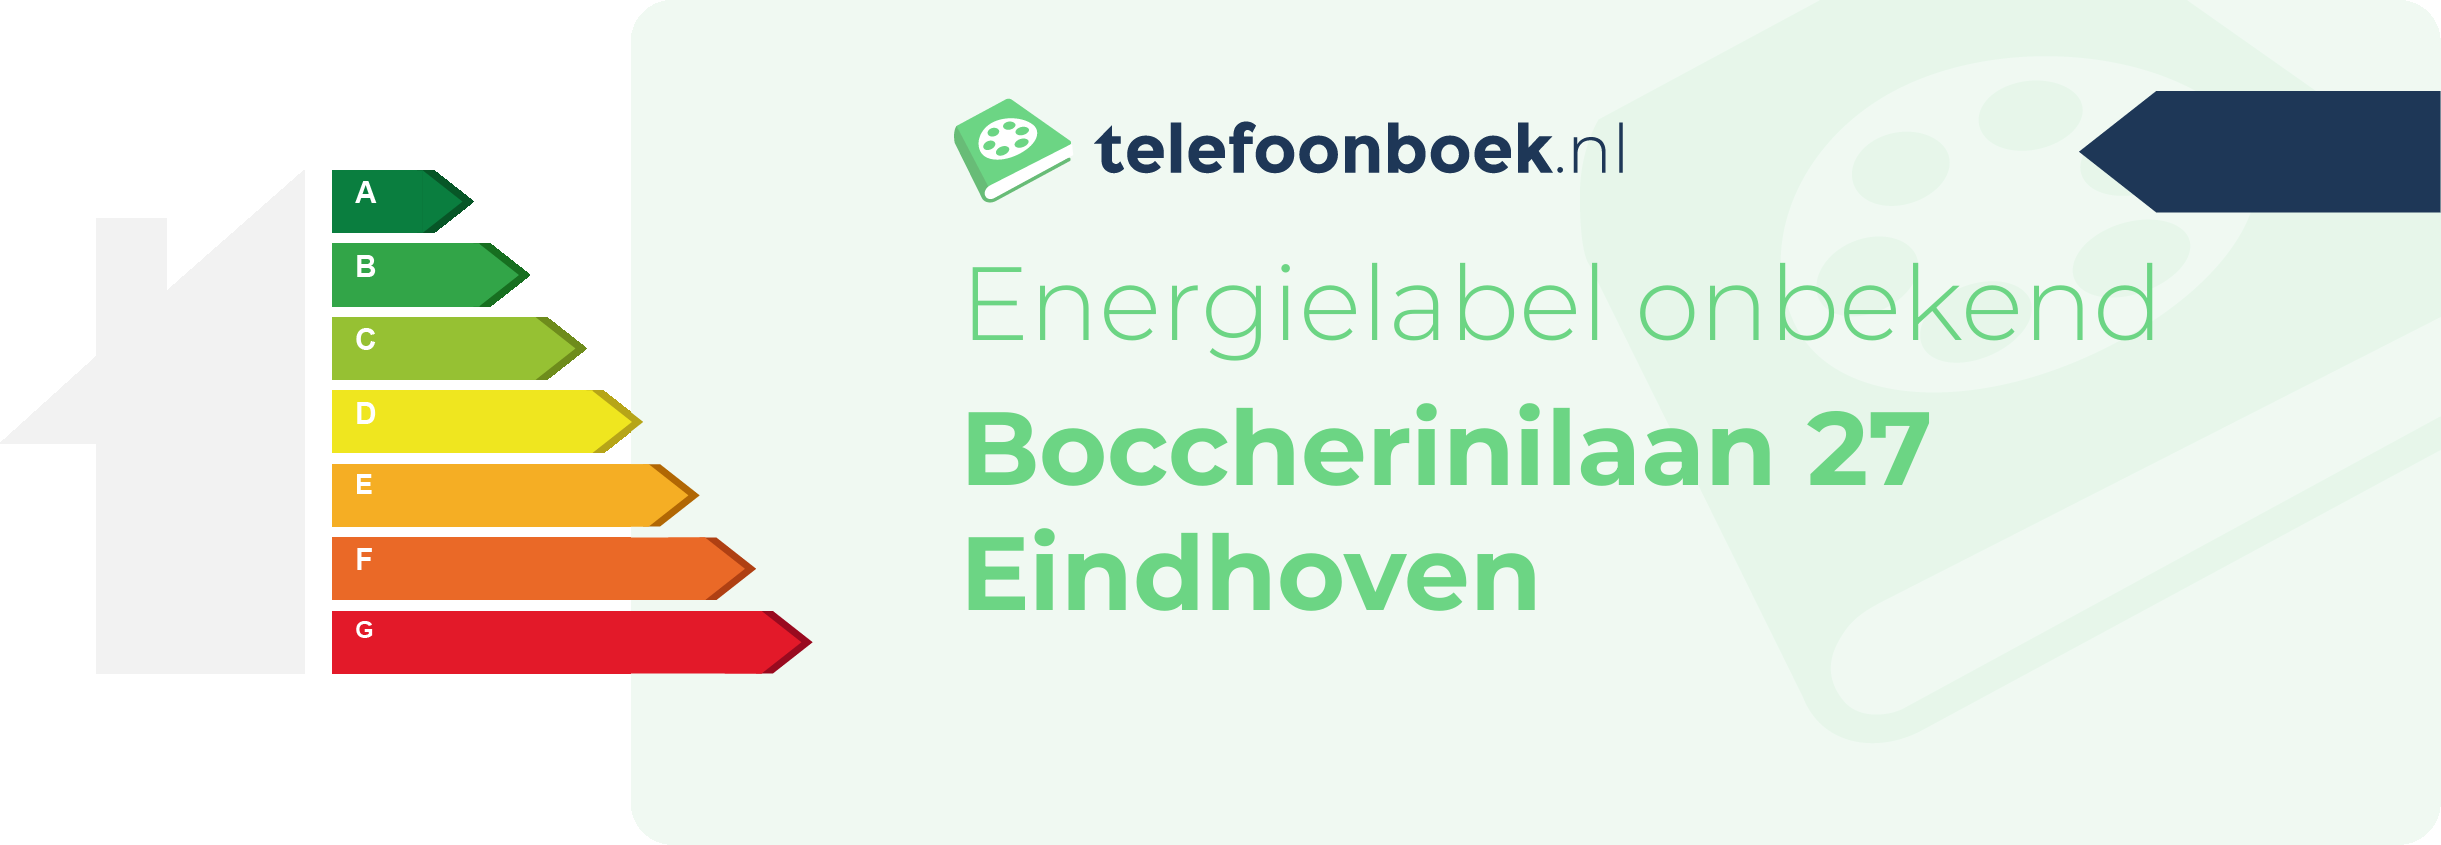 Energielabel Boccherinilaan 27 Eindhoven